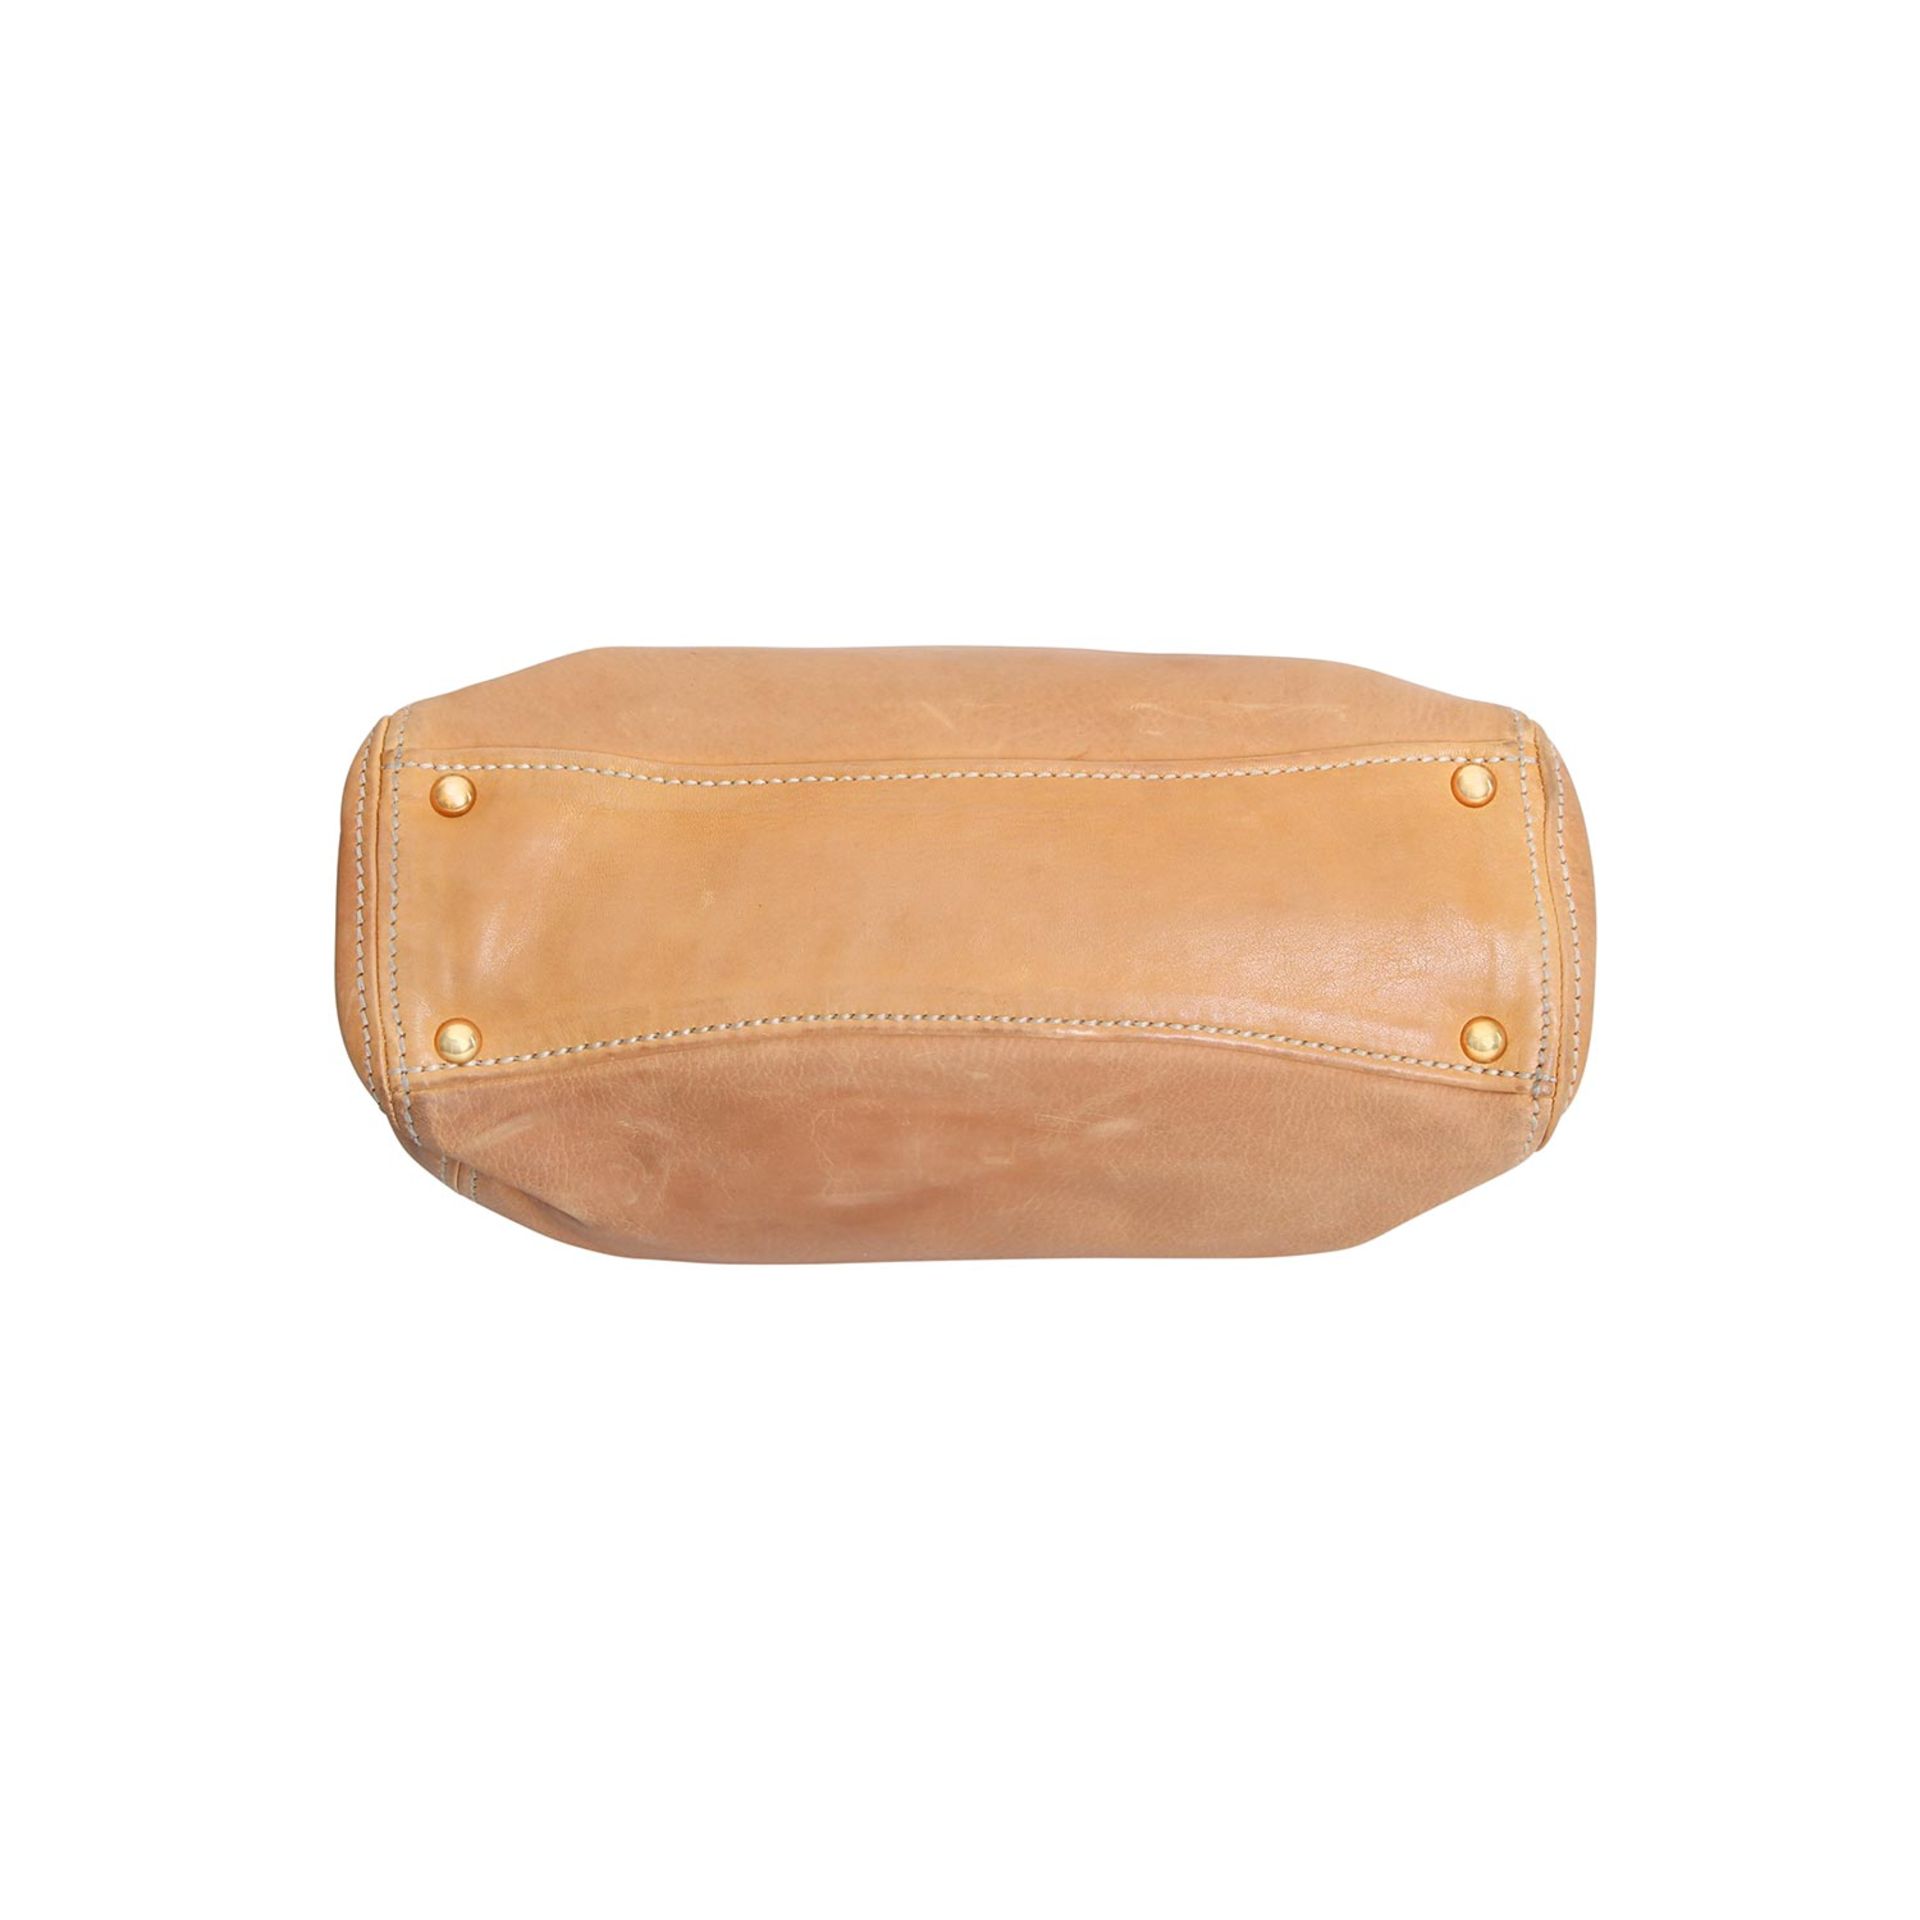 MIU MIU Schultertasche.Camelfarbenes Leder mit Klappverschluss, goldfarbene Hardware, Klick- - Bild 5 aus 6